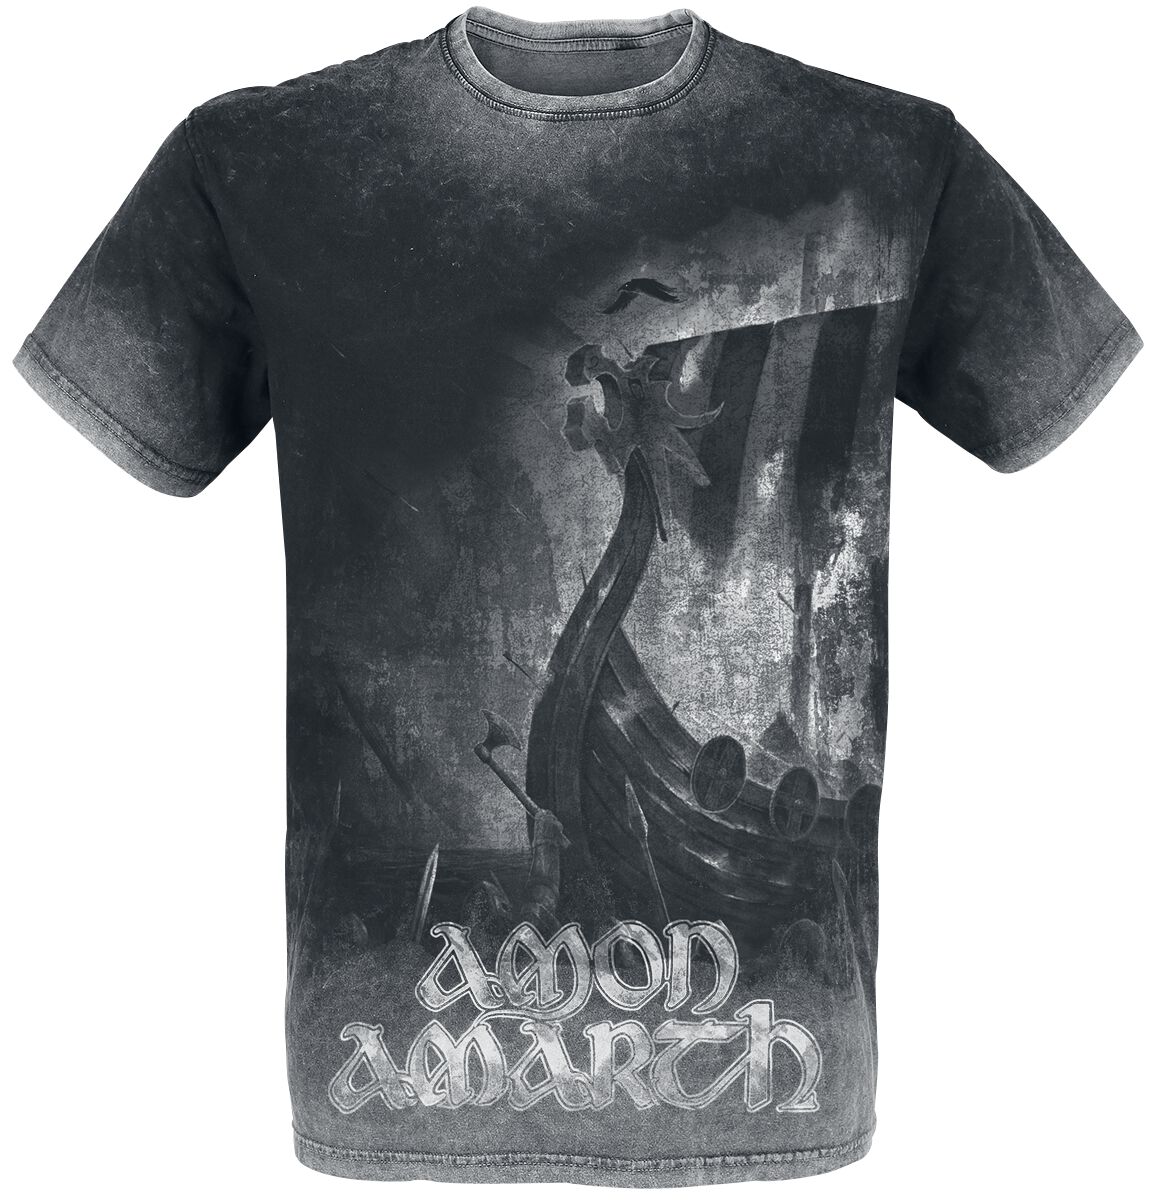 Amon Amarth T-Shirt - One Thousand Burning Arrows - M bis 4XL - für Männer - Größe 3XL - charcoal  - EMP exklusives Merchandise!